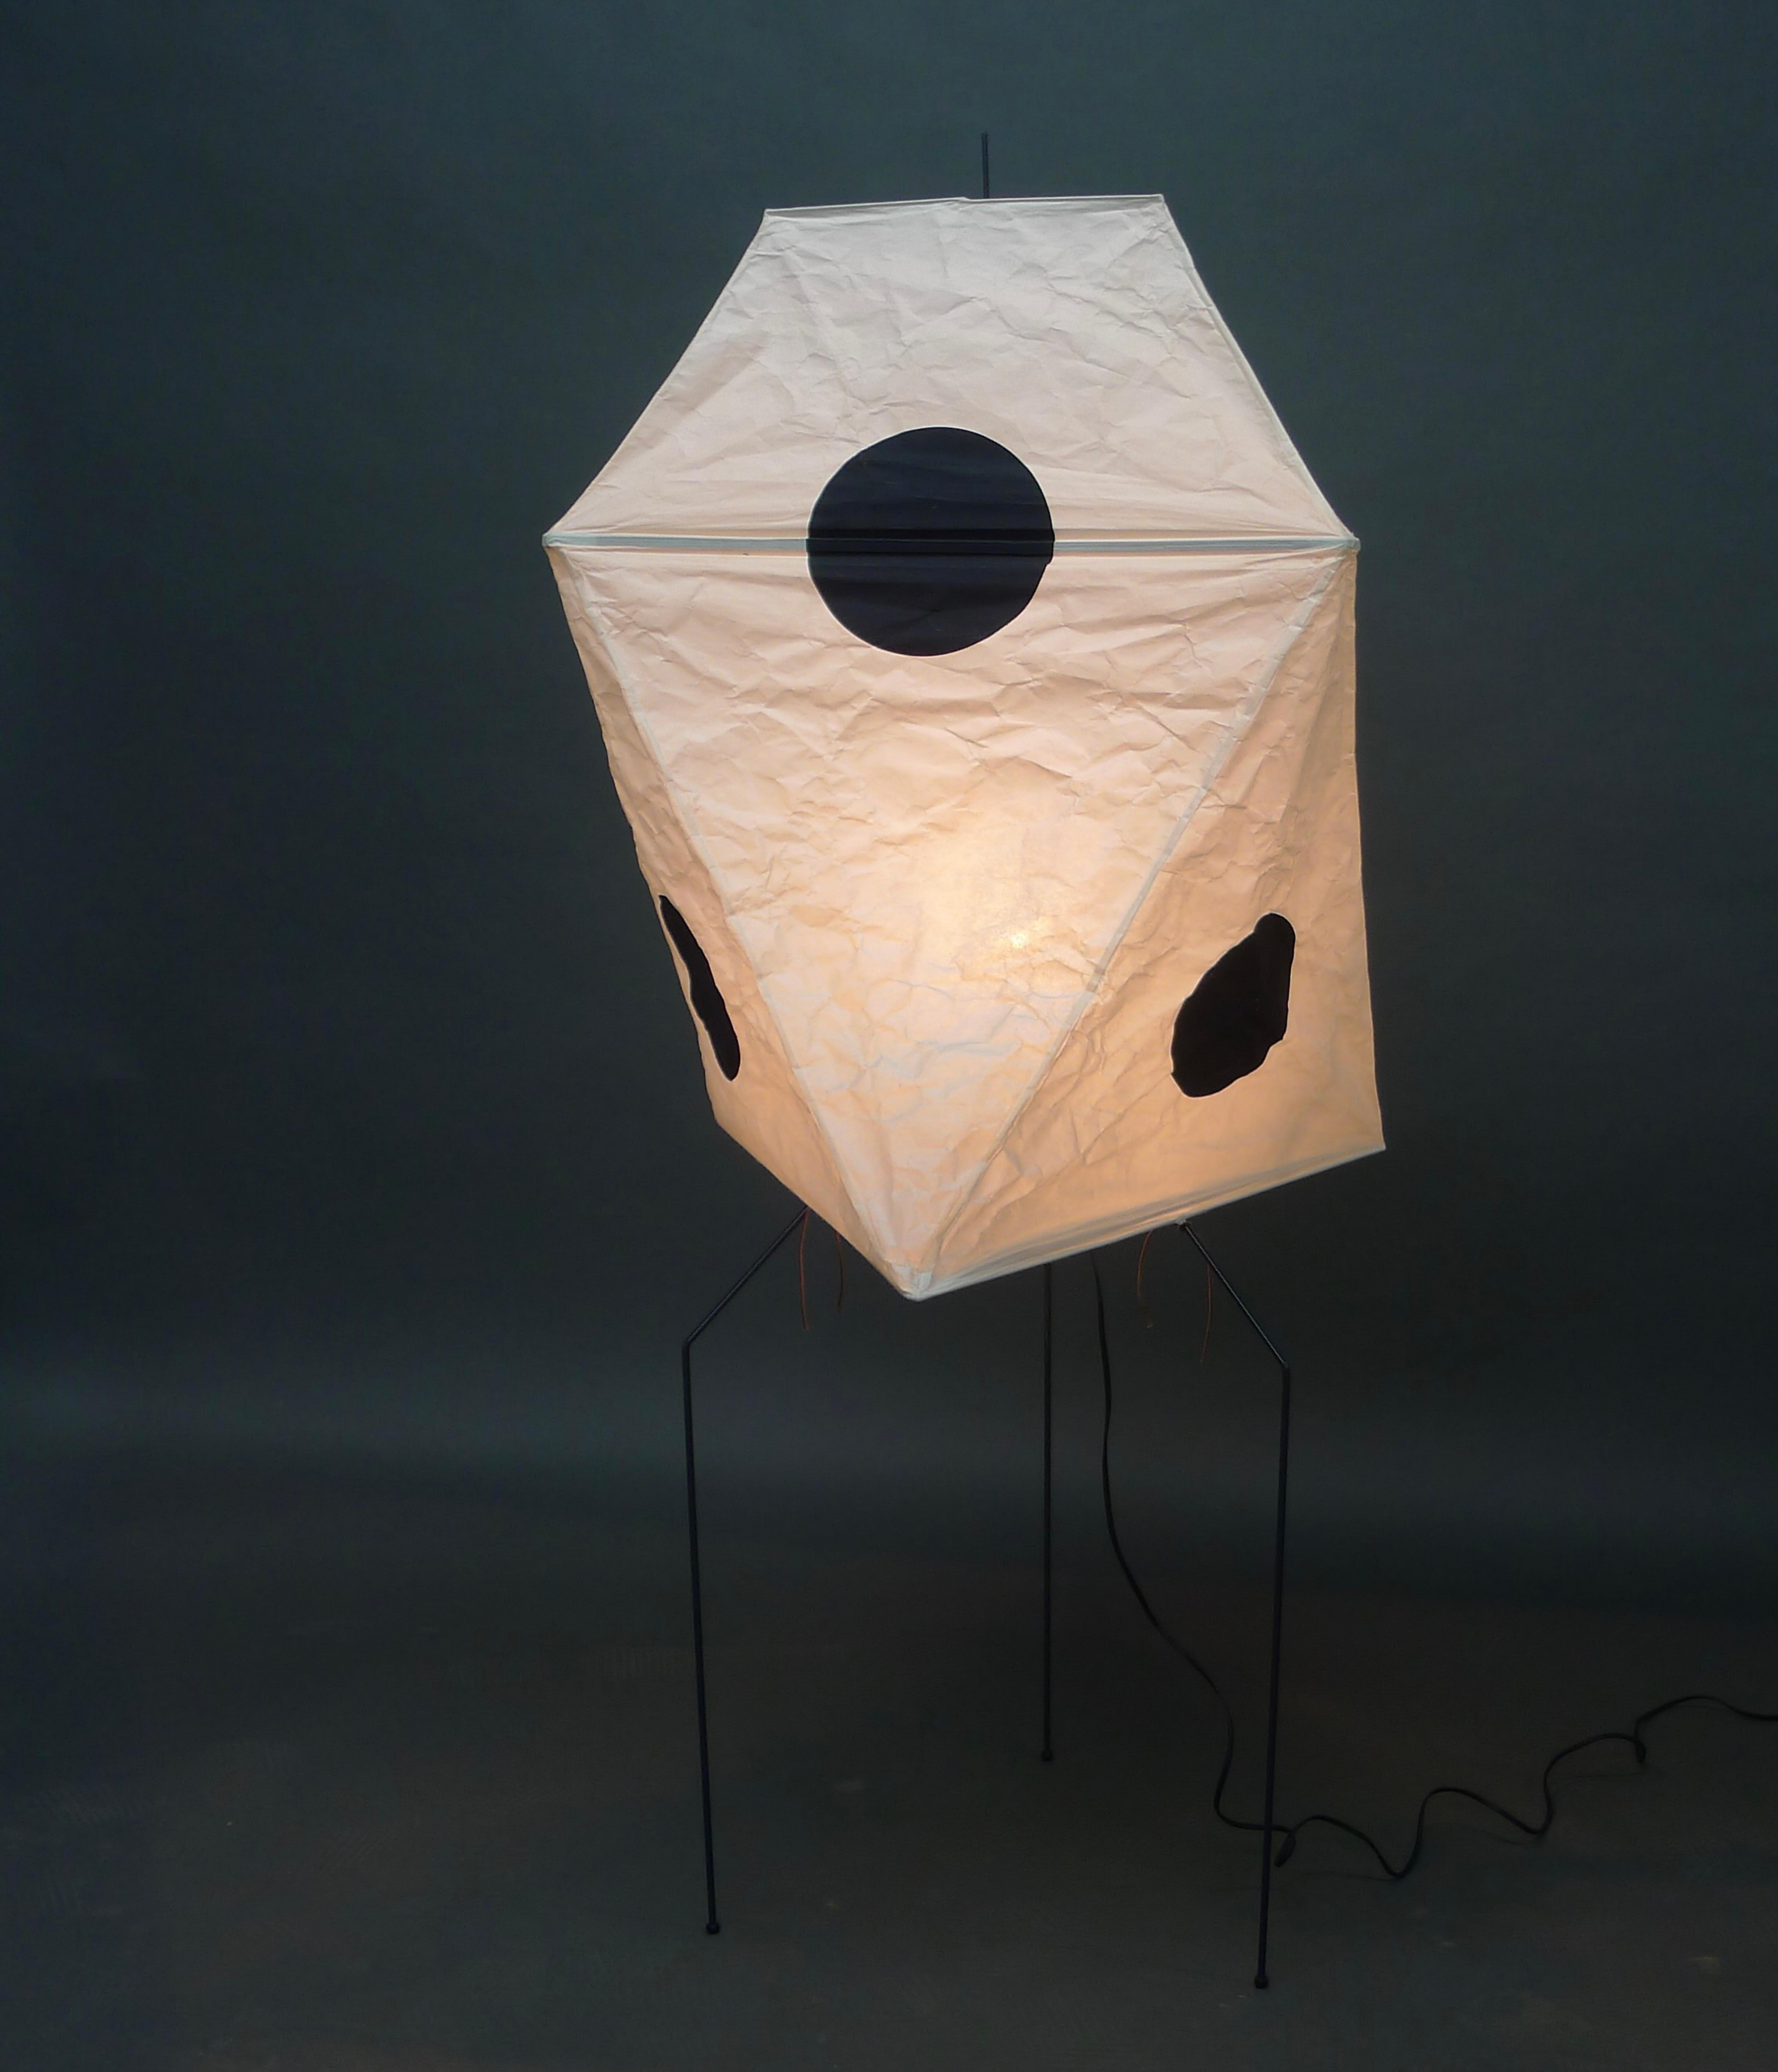 Late 20th Century Isamu Noguchi Floor Light, Akari UF3-Q, Washi Paper Shade with Black Spheres